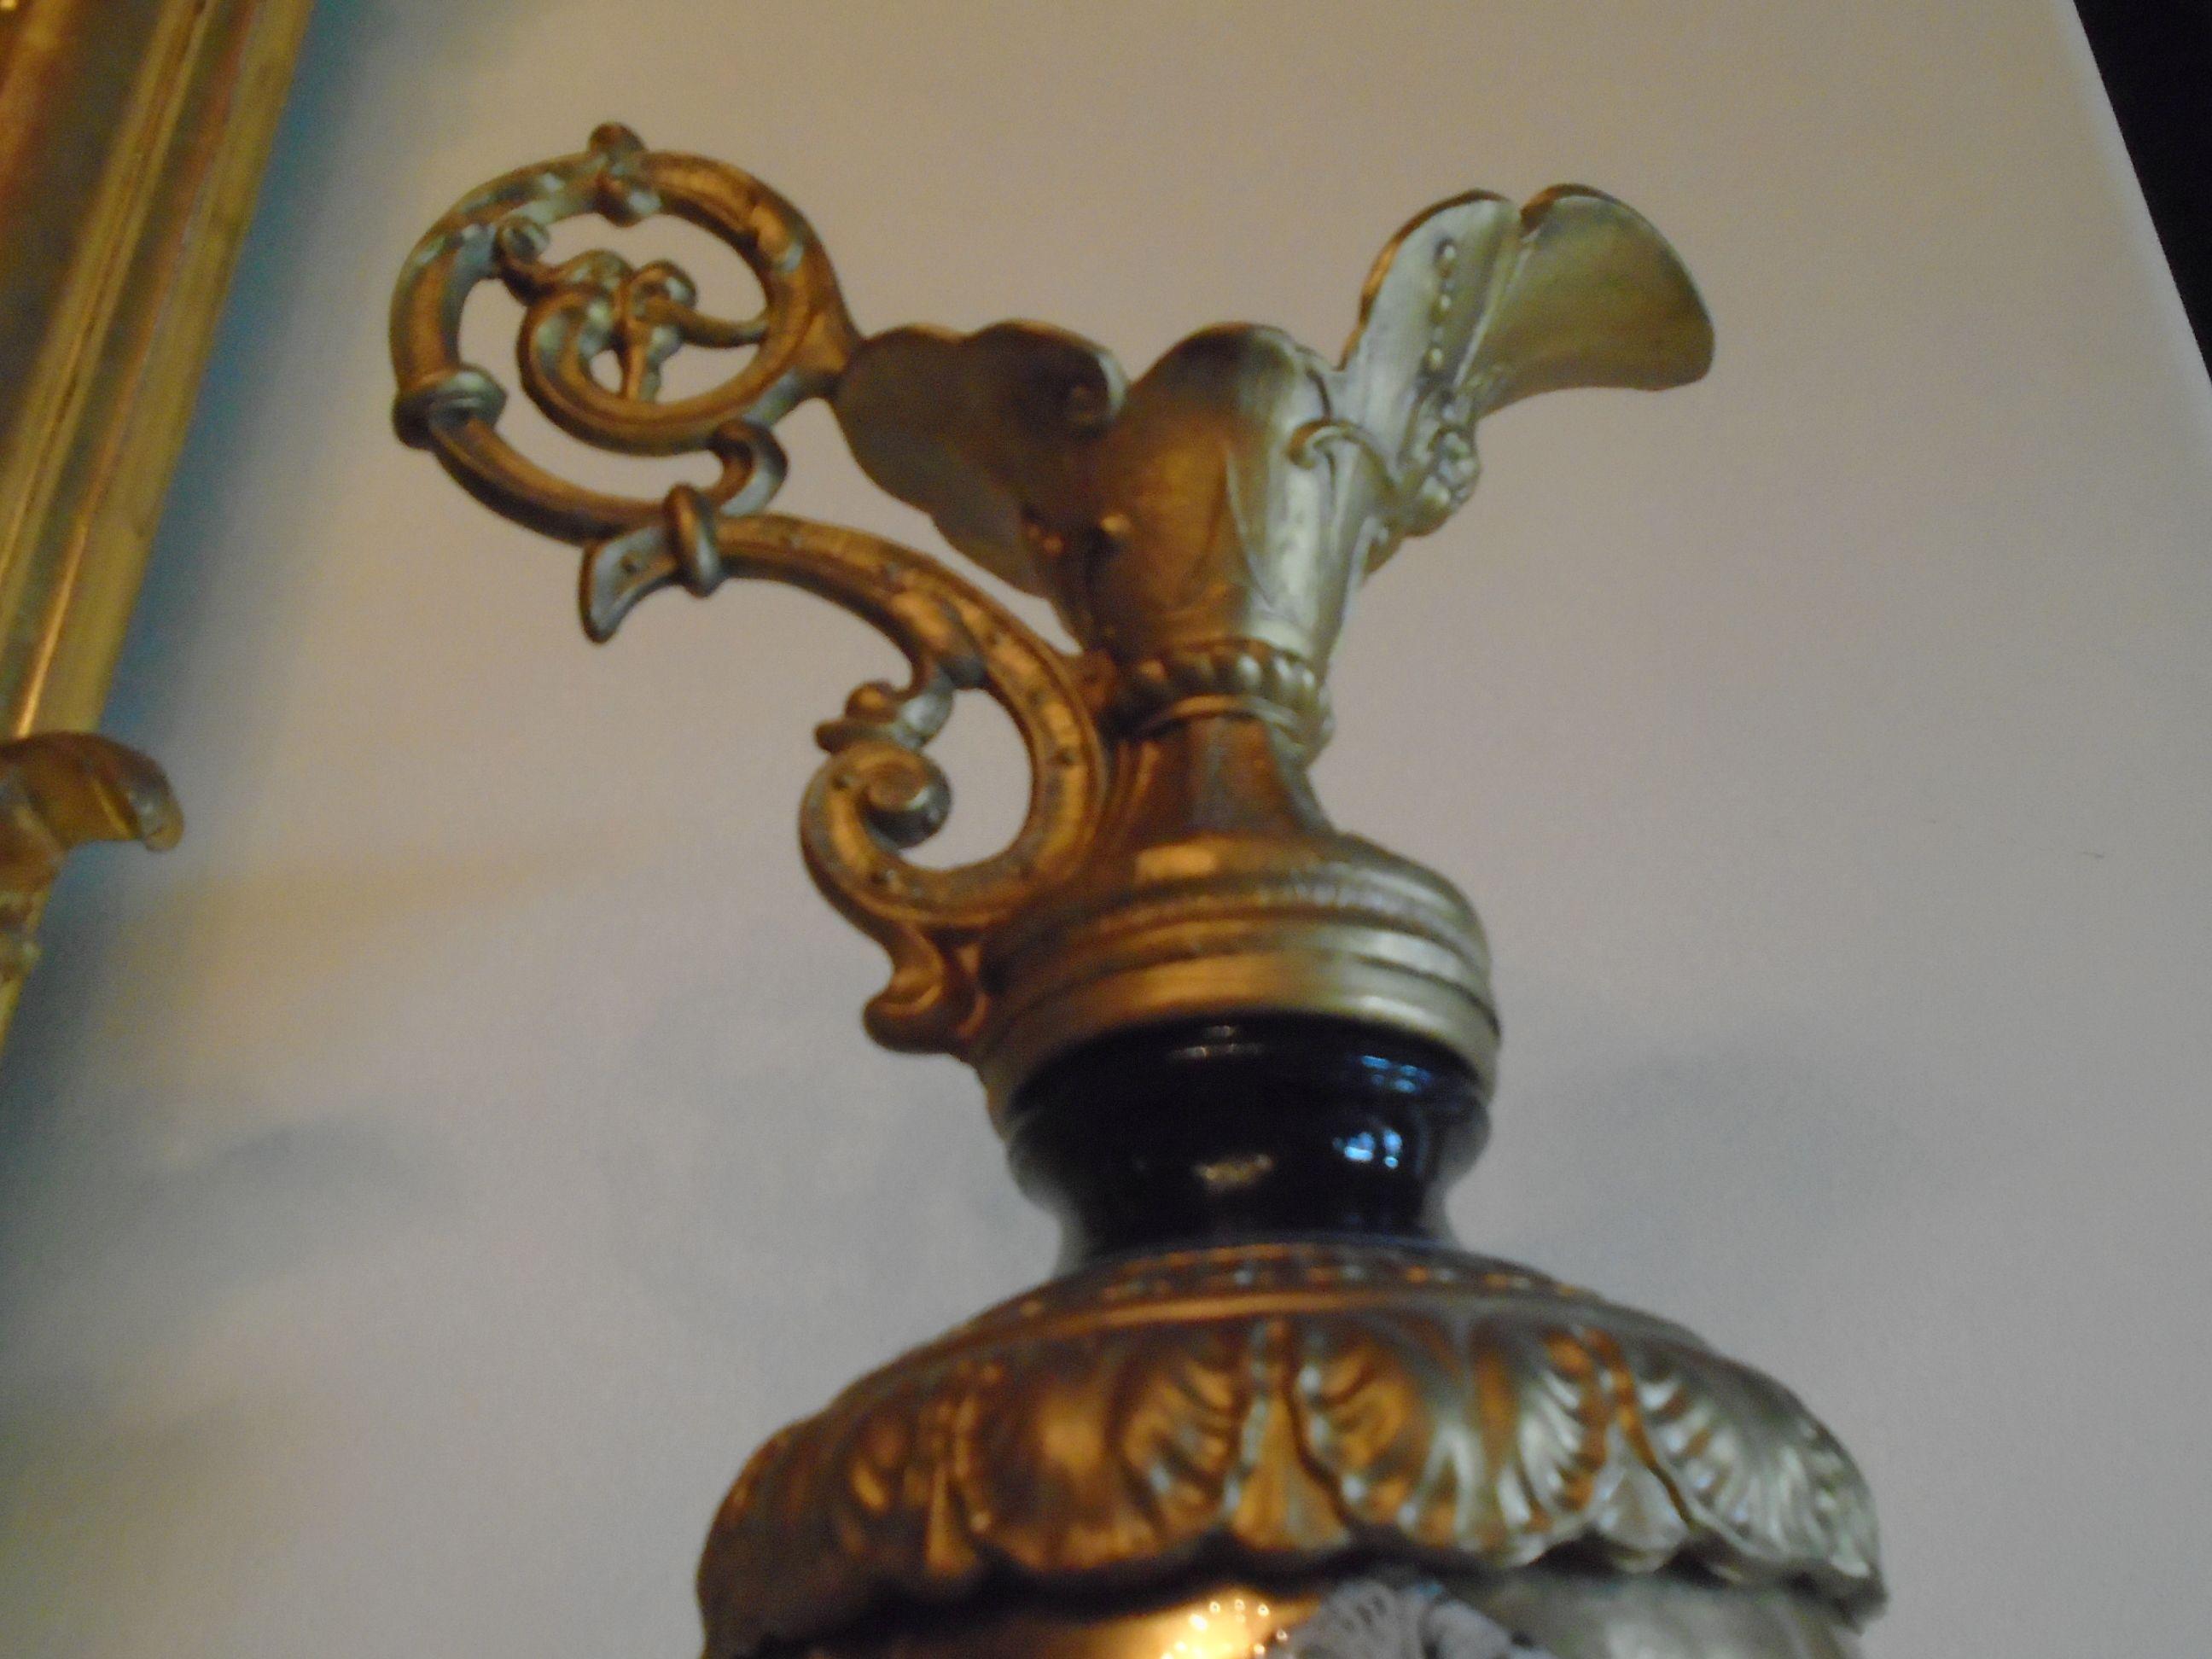 Antique Ewer Bronze & Porcelain decorative pitcher.